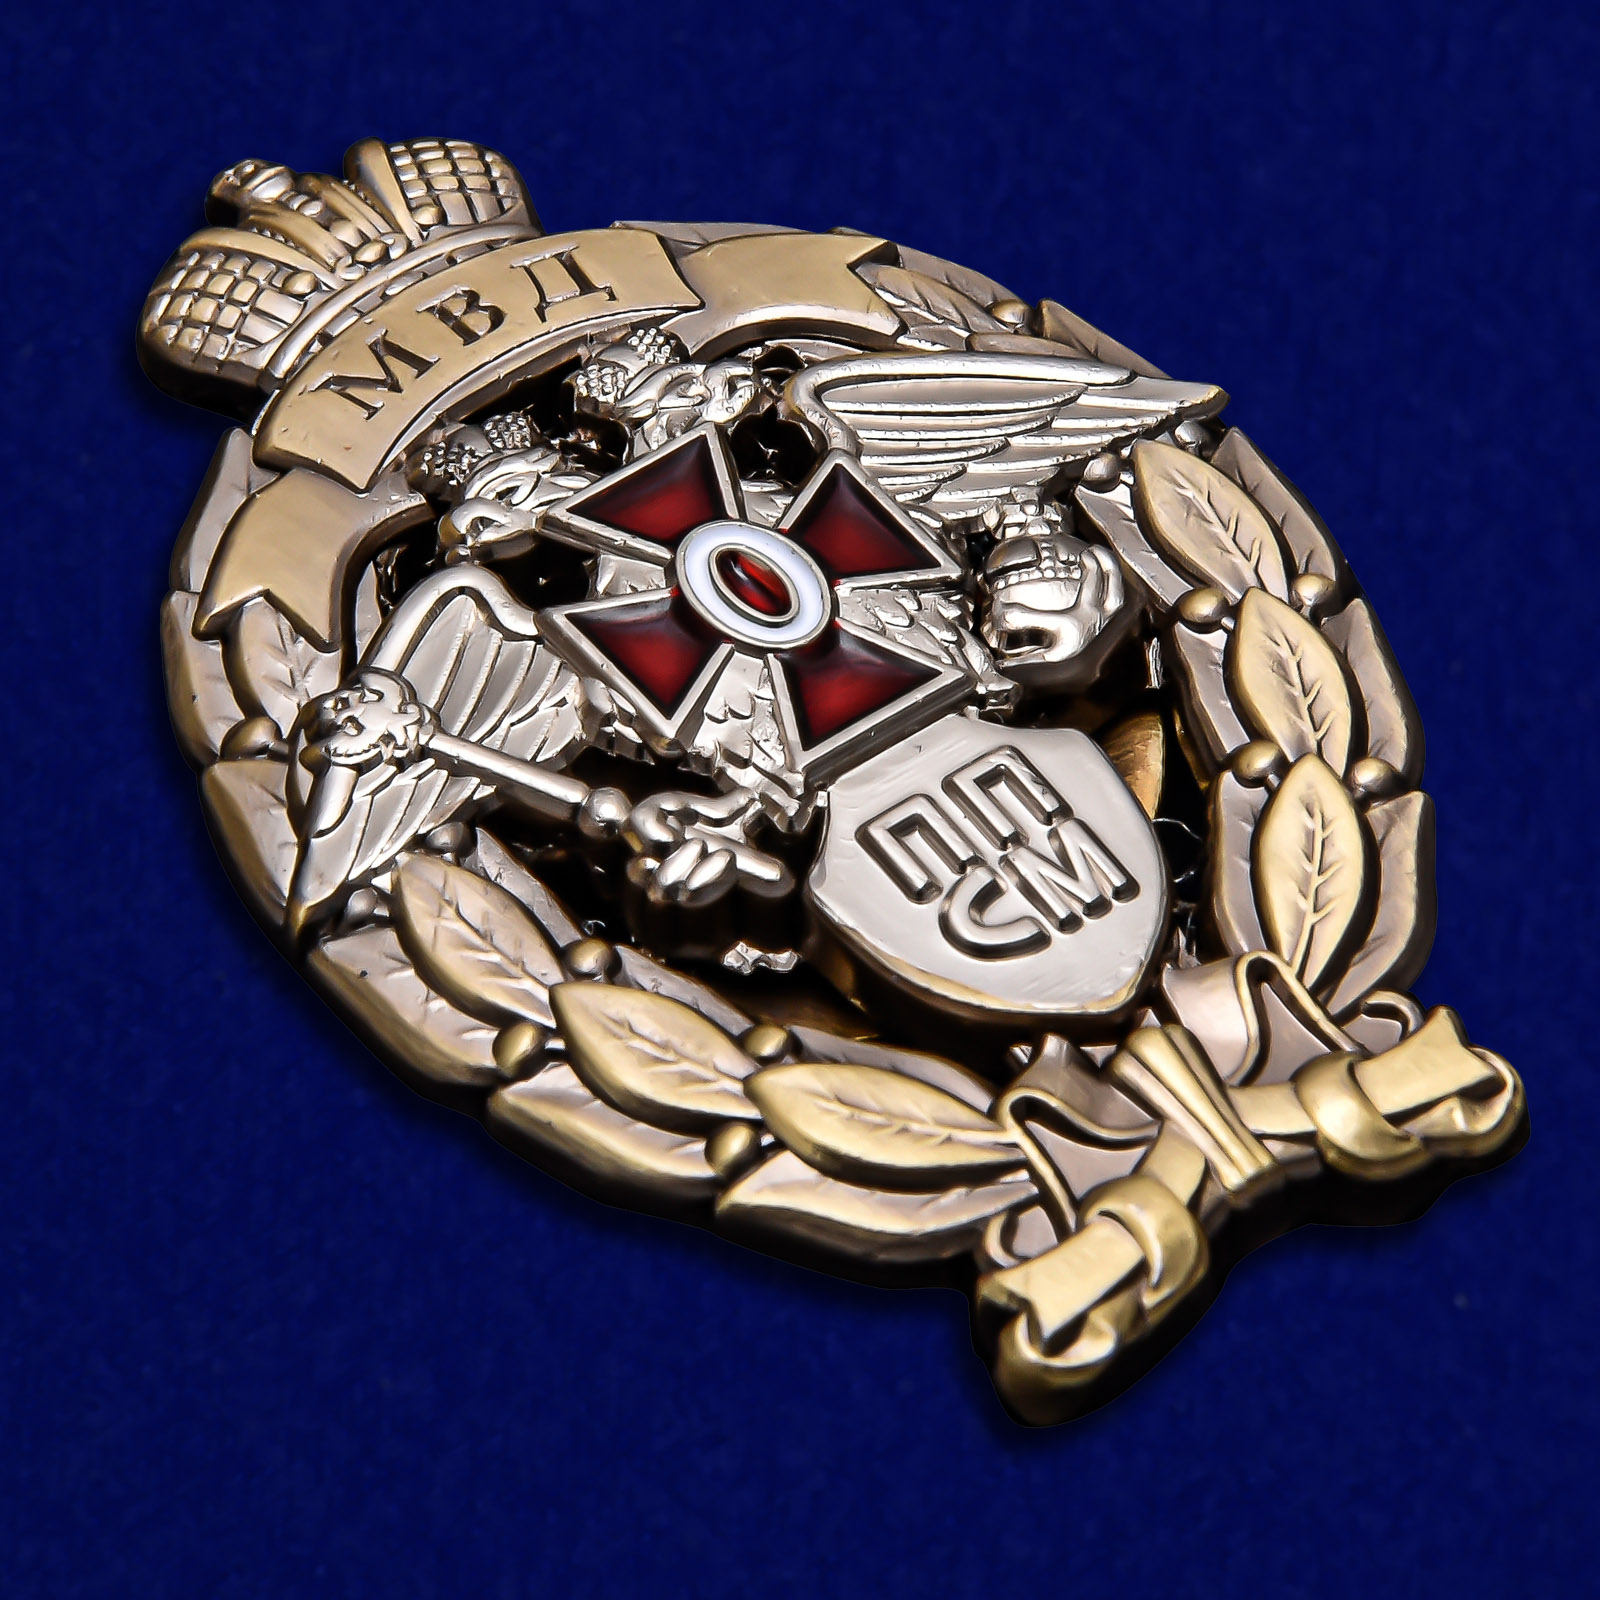 Латунный знак МВД "Лучший сотрудник патрульно-постовой службы" 